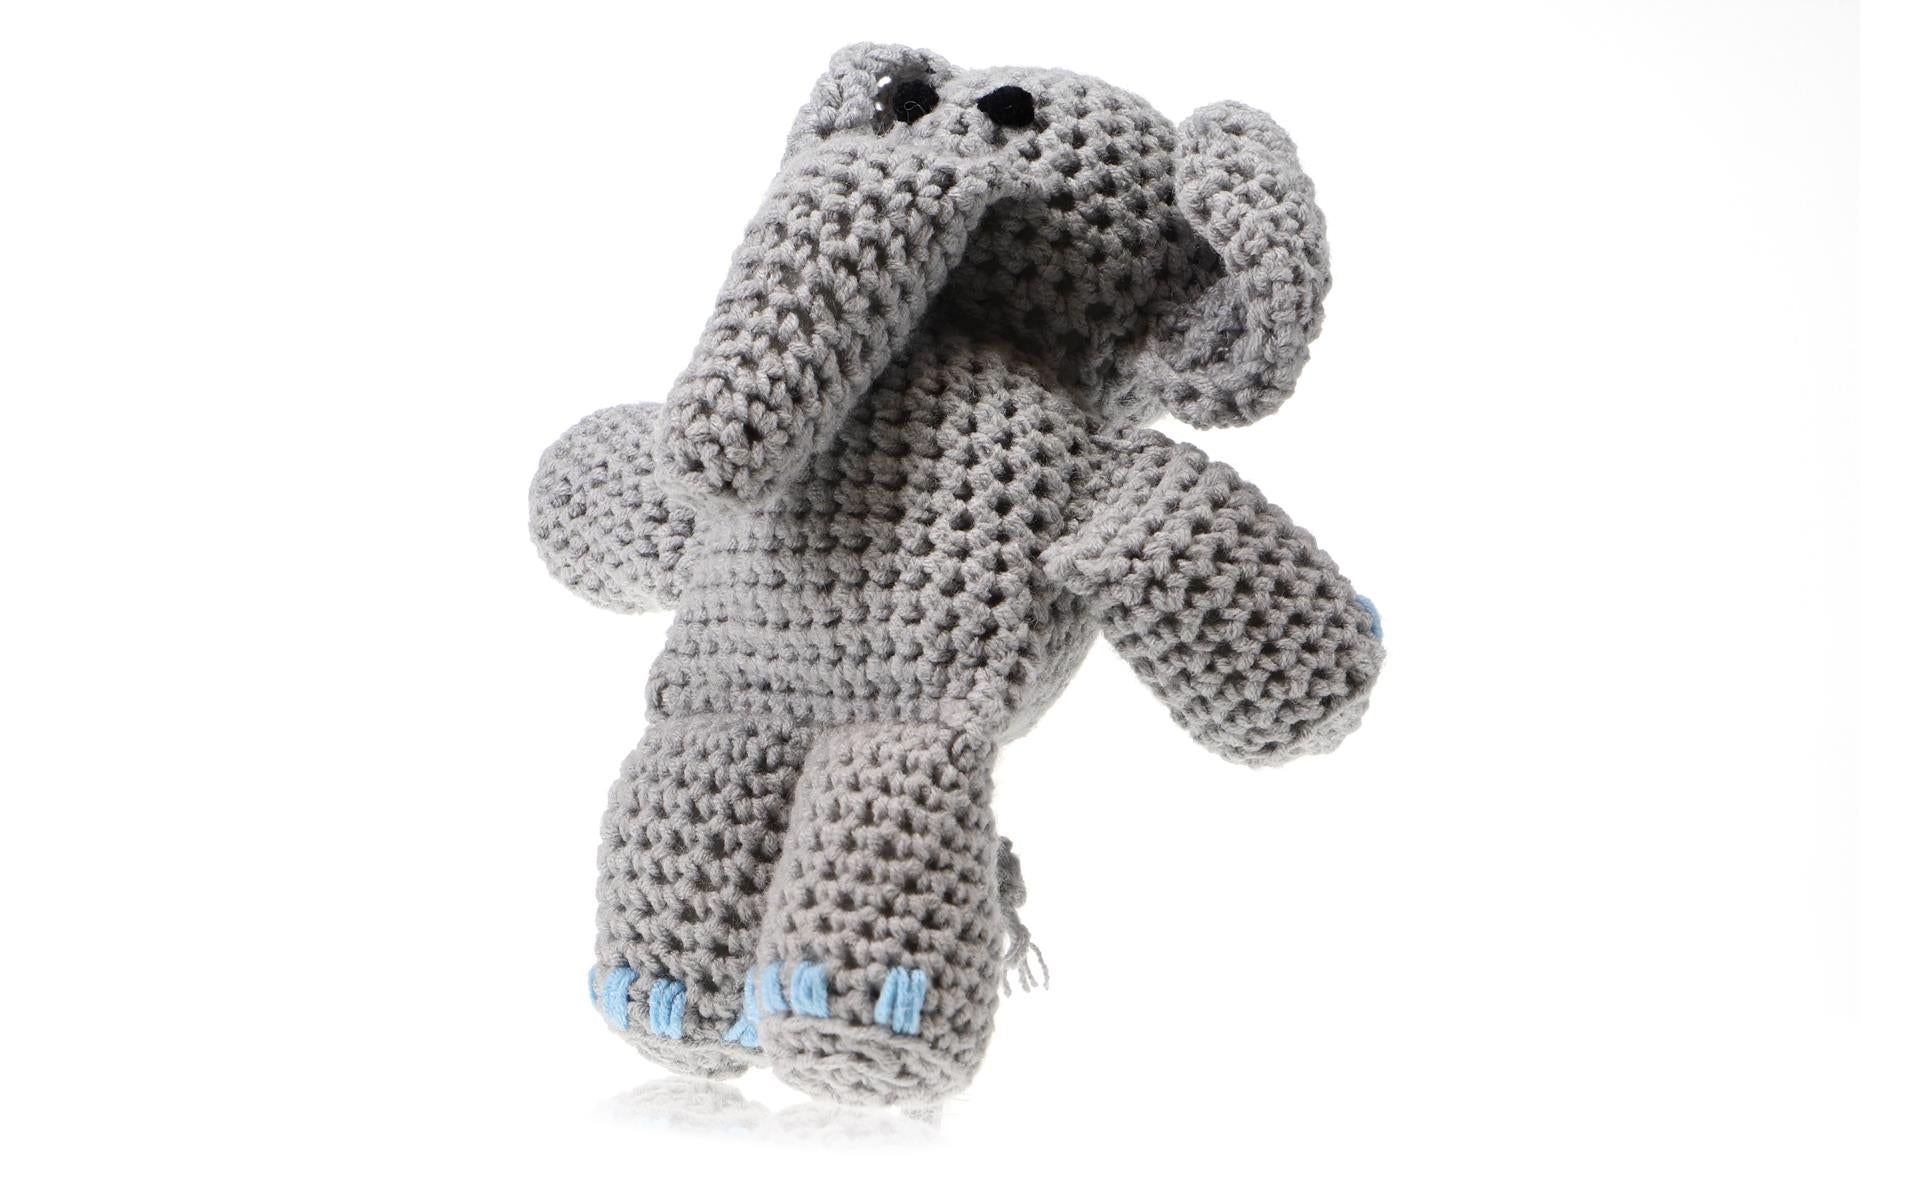 Leisure Arts Crochet Kit Amigurumi Elephant - Leisure Arts